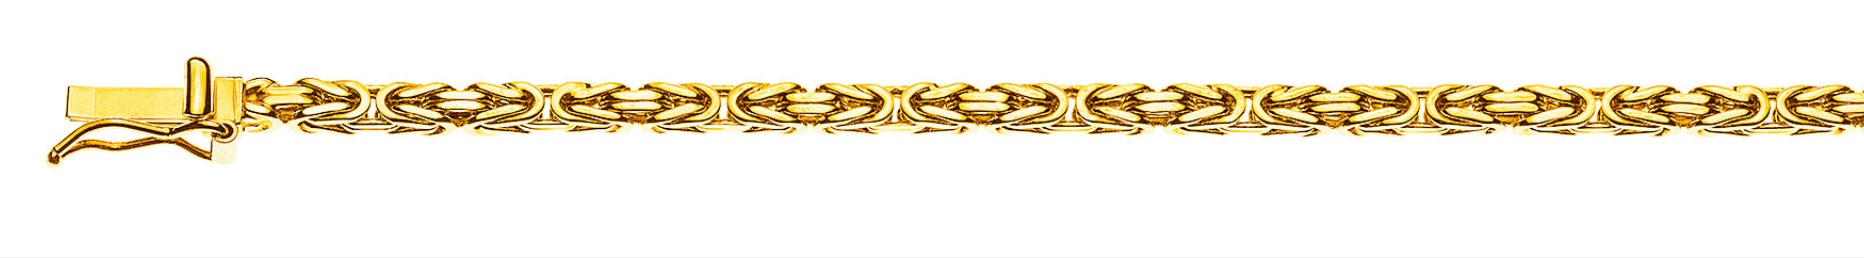 AURONOS Prestige Halskette Gelbgold 18K Königskette 55cm 2.5mm